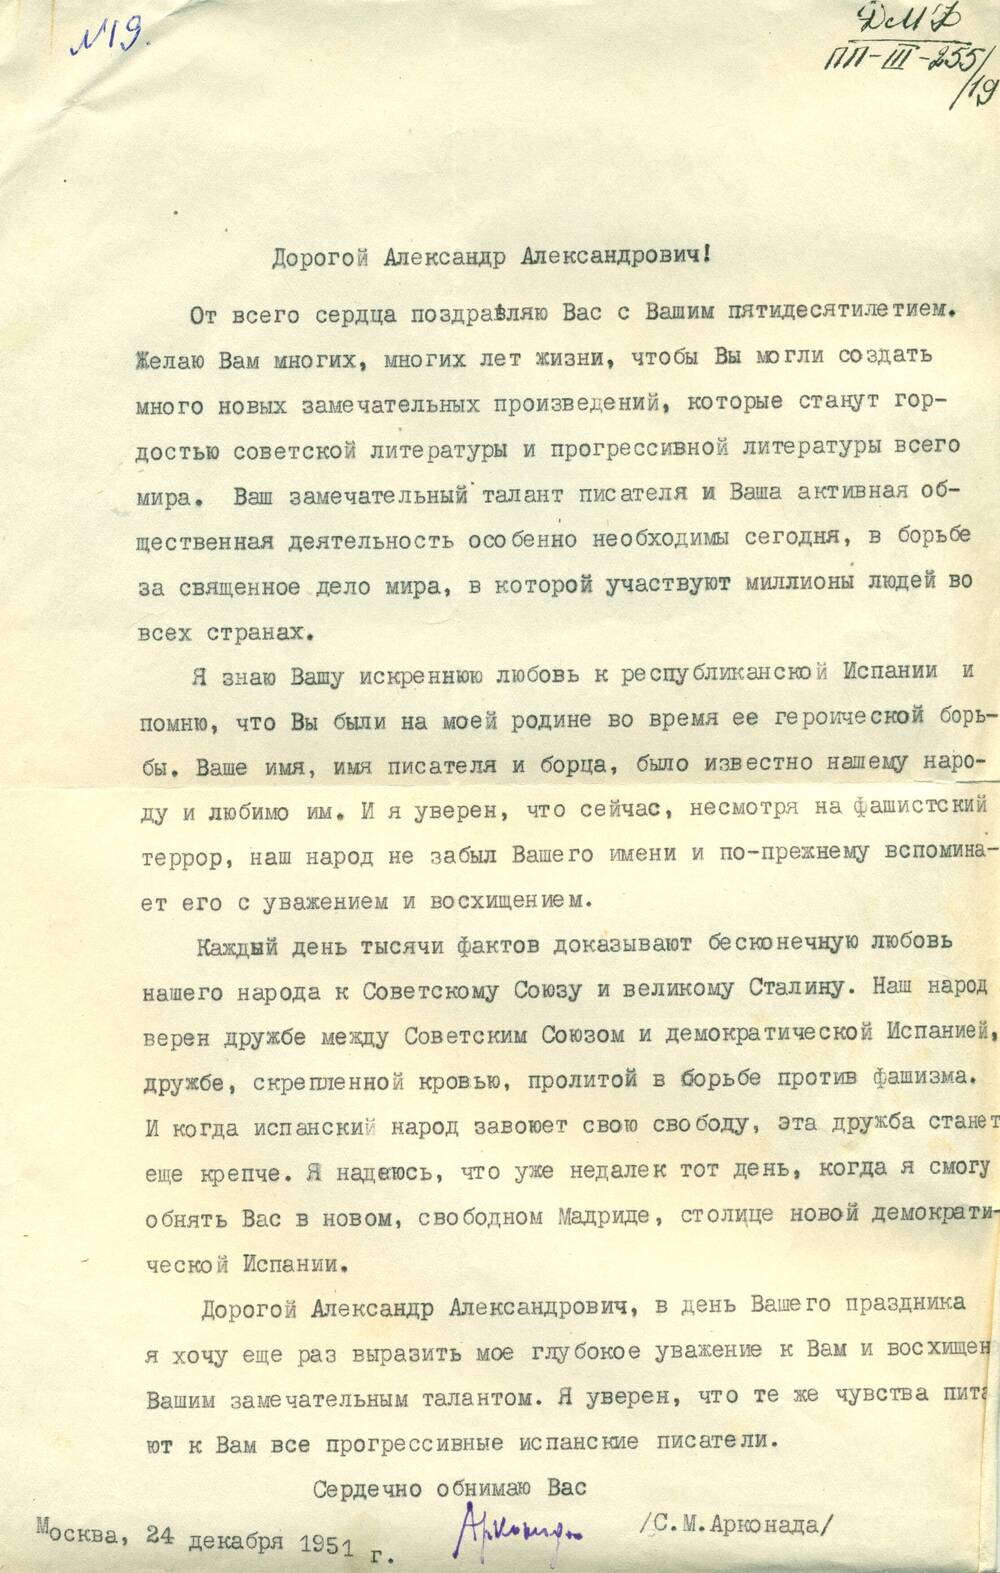 Письмо от С.М. Арконада - Фадееву А.А., поздравление с 50-летием